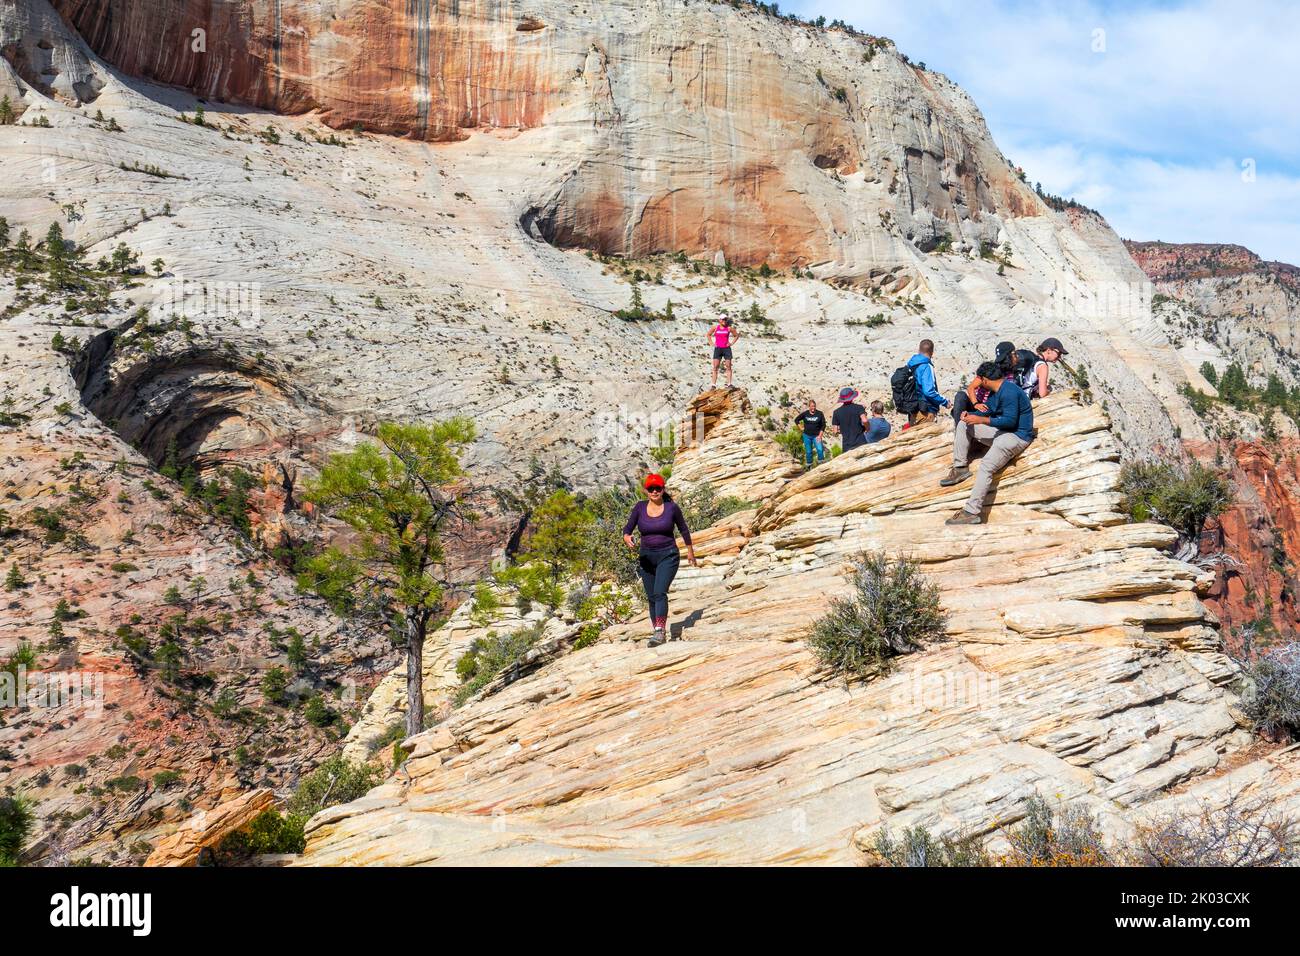 El Parque Nacional Zion está ubicado en el suroeste de Utah en la frontera con Arizona. Tiene una superficie de 579 kö² y se encuentra entre 1128 m y 2660 m de altitud. Excursionistas en Angels Landing. Foto de stock